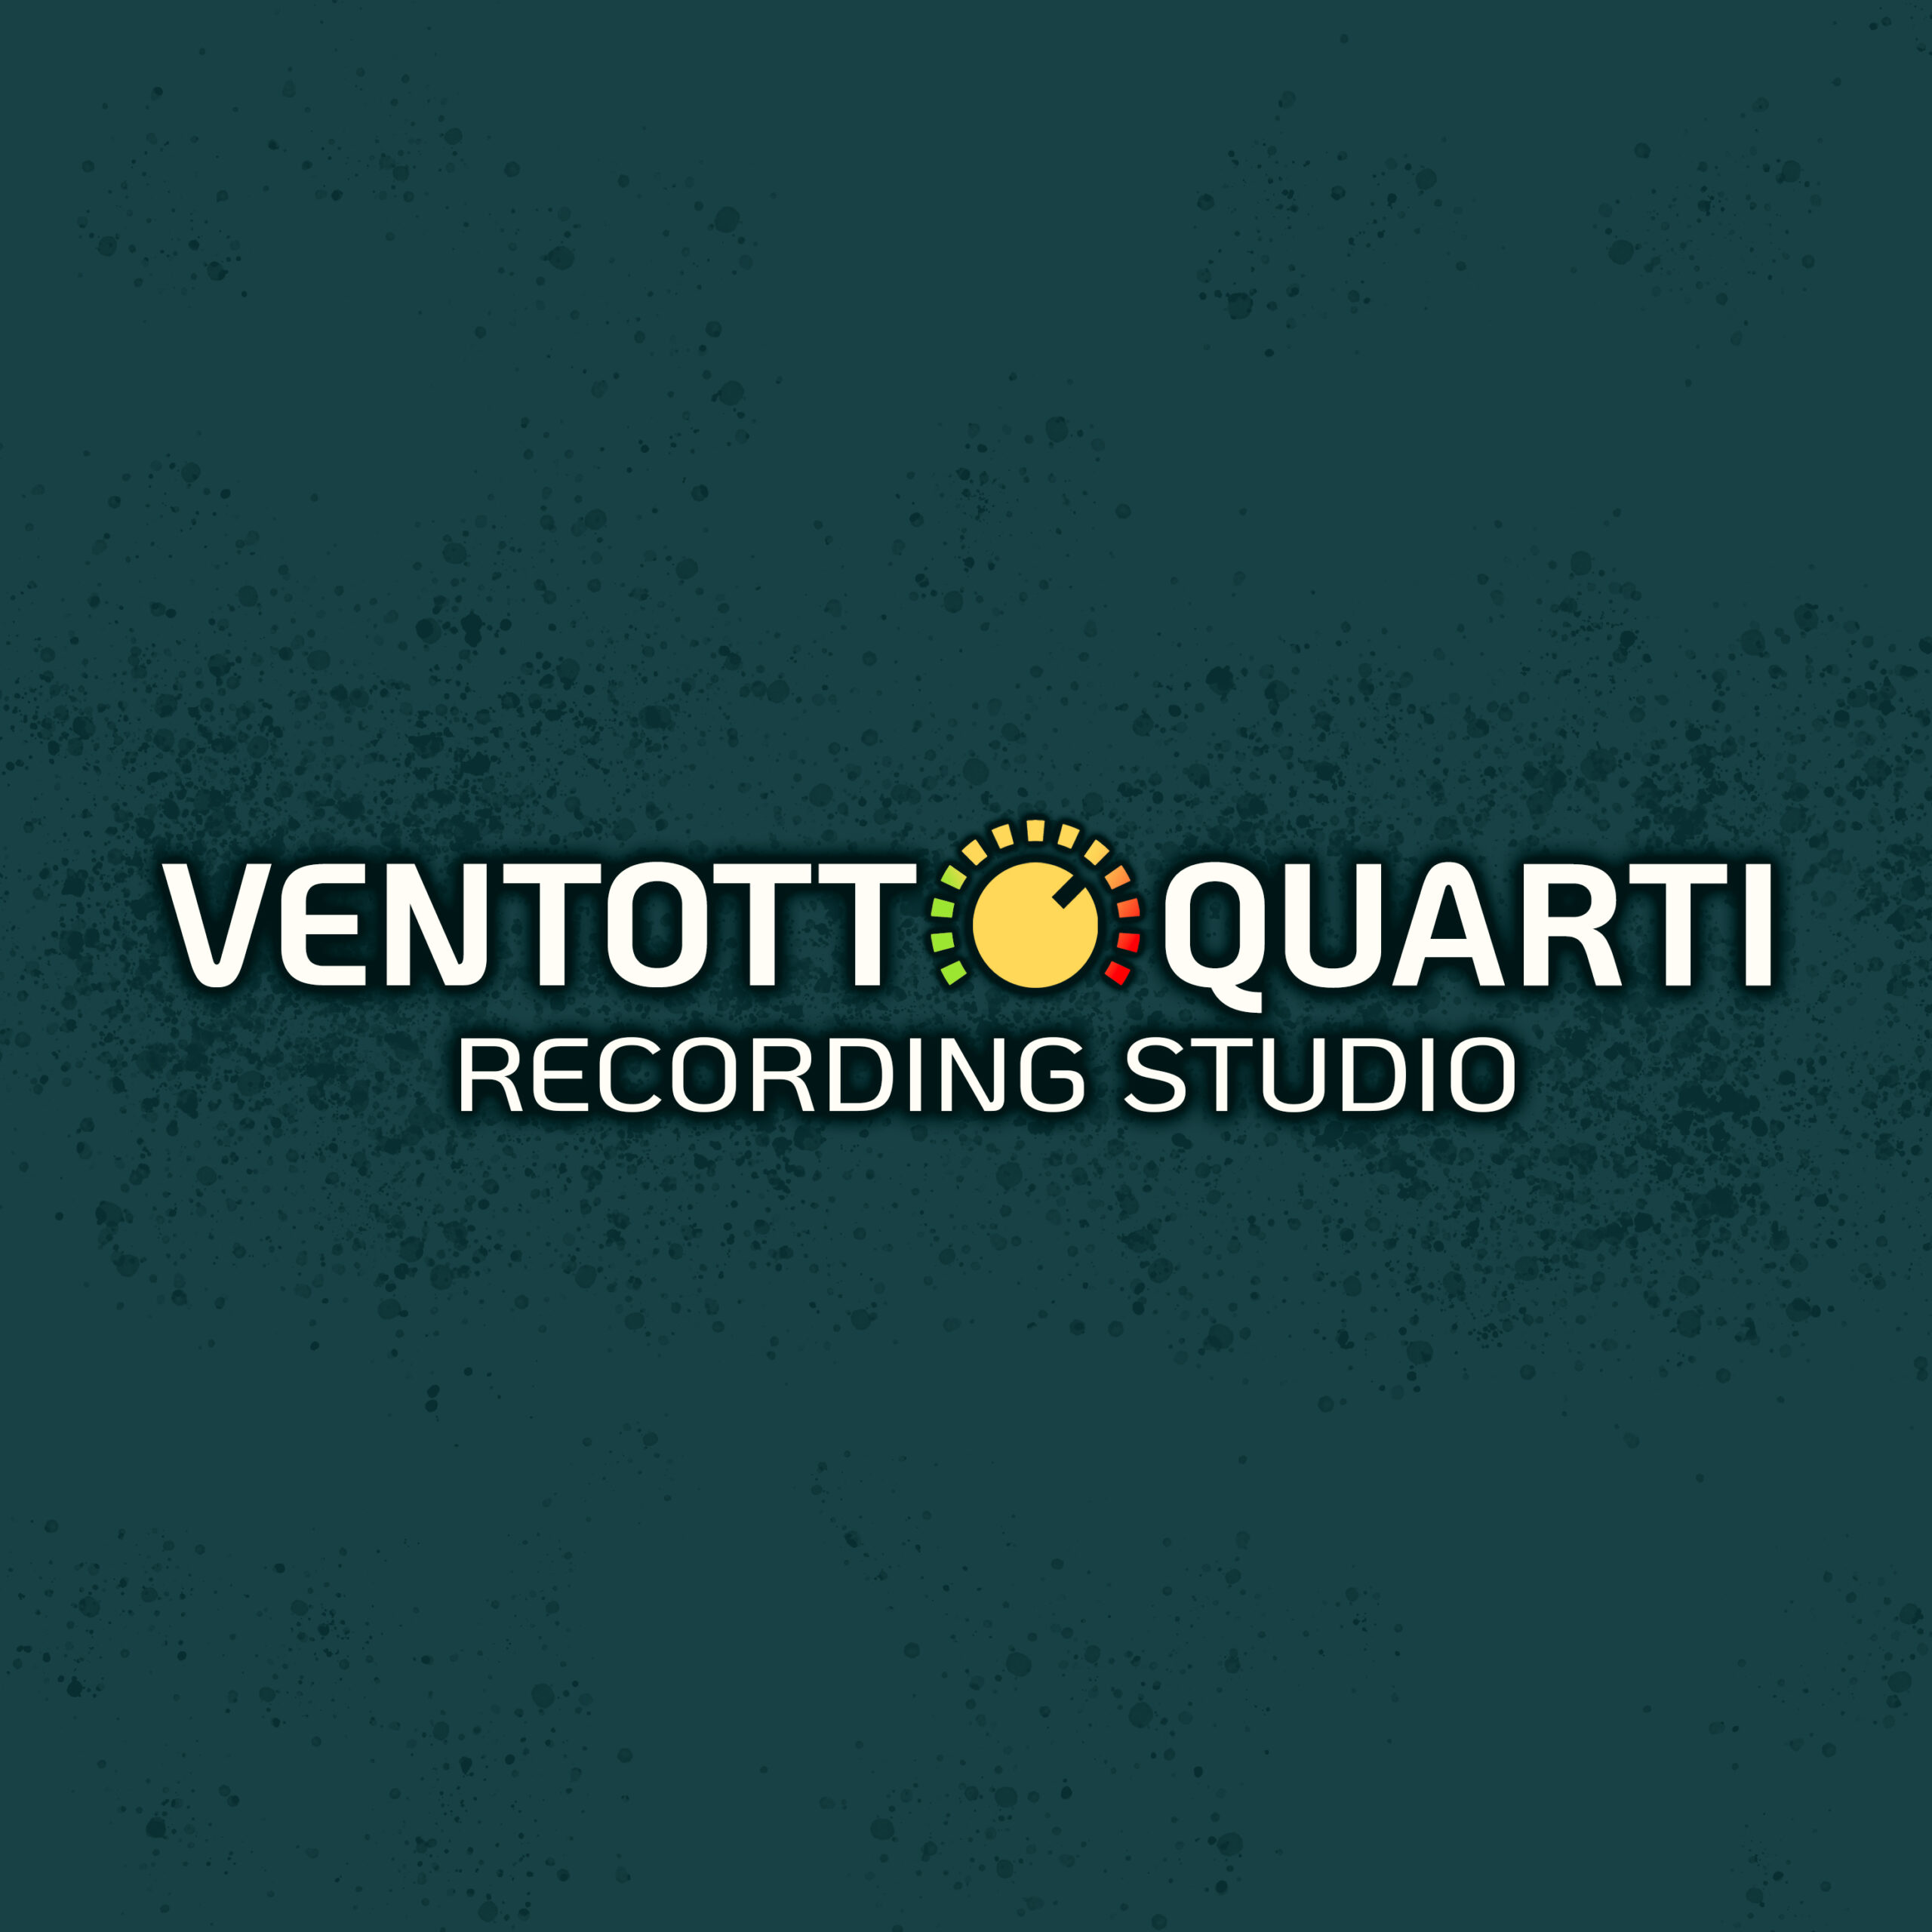 Ventottoquarti Recording Studio - Studio di registrazione e produzione musicale a Reggio Emilia.